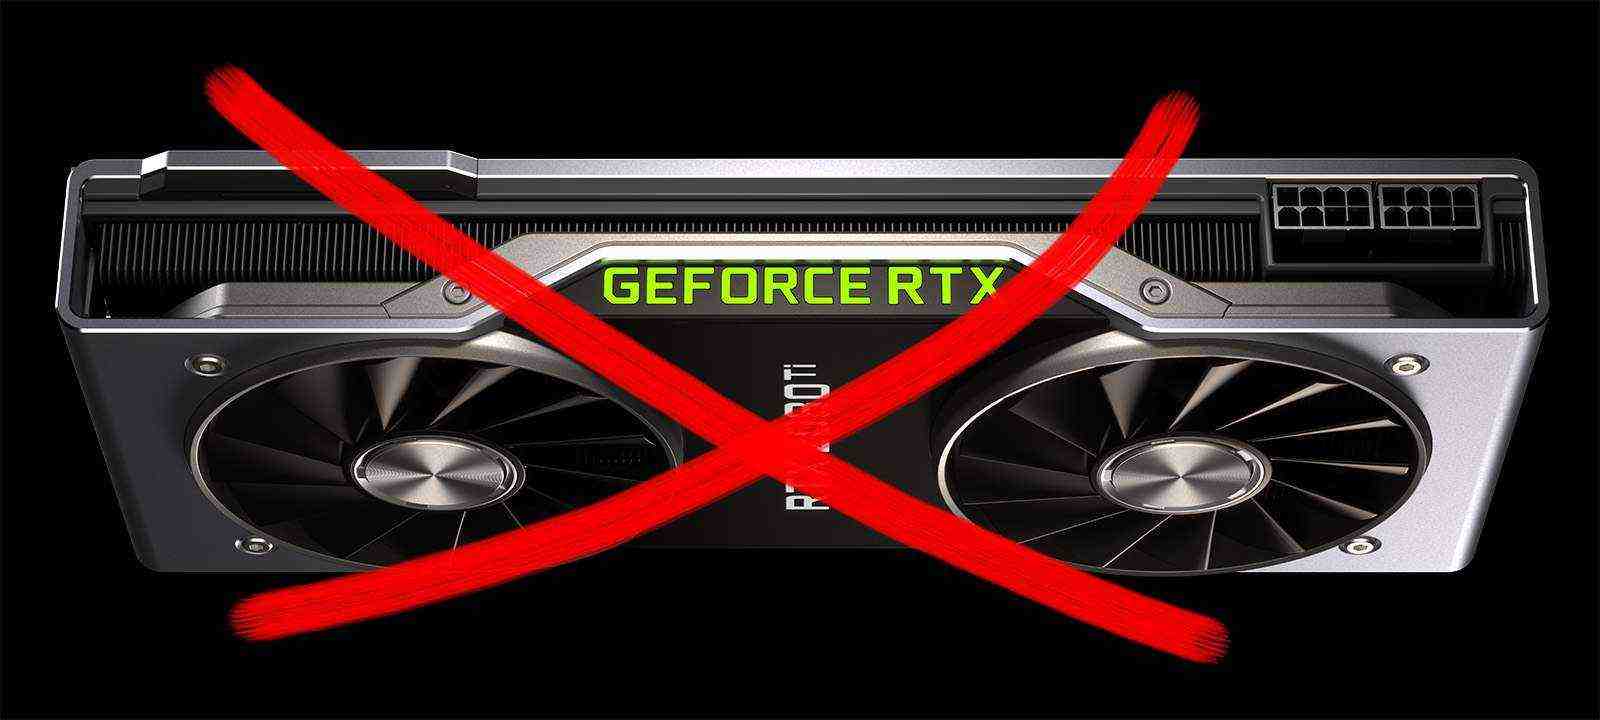 Массовое вымирание турингов. Пользователи жалуются на выход из строя видеокарт GeForce RTX 2080 Ti